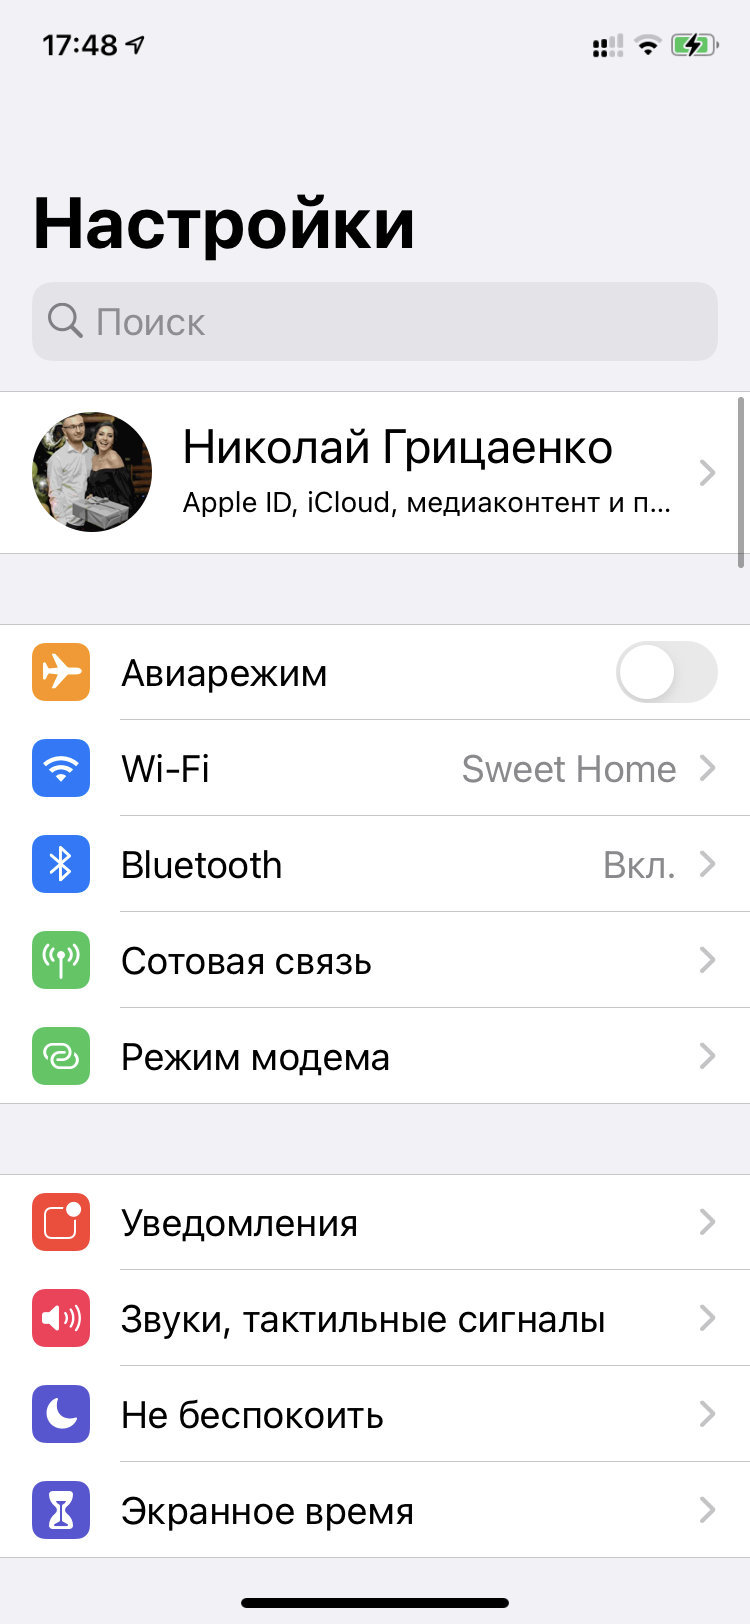 Как на iPhone с iOS 13 включается вспышка камеры для уведомлений